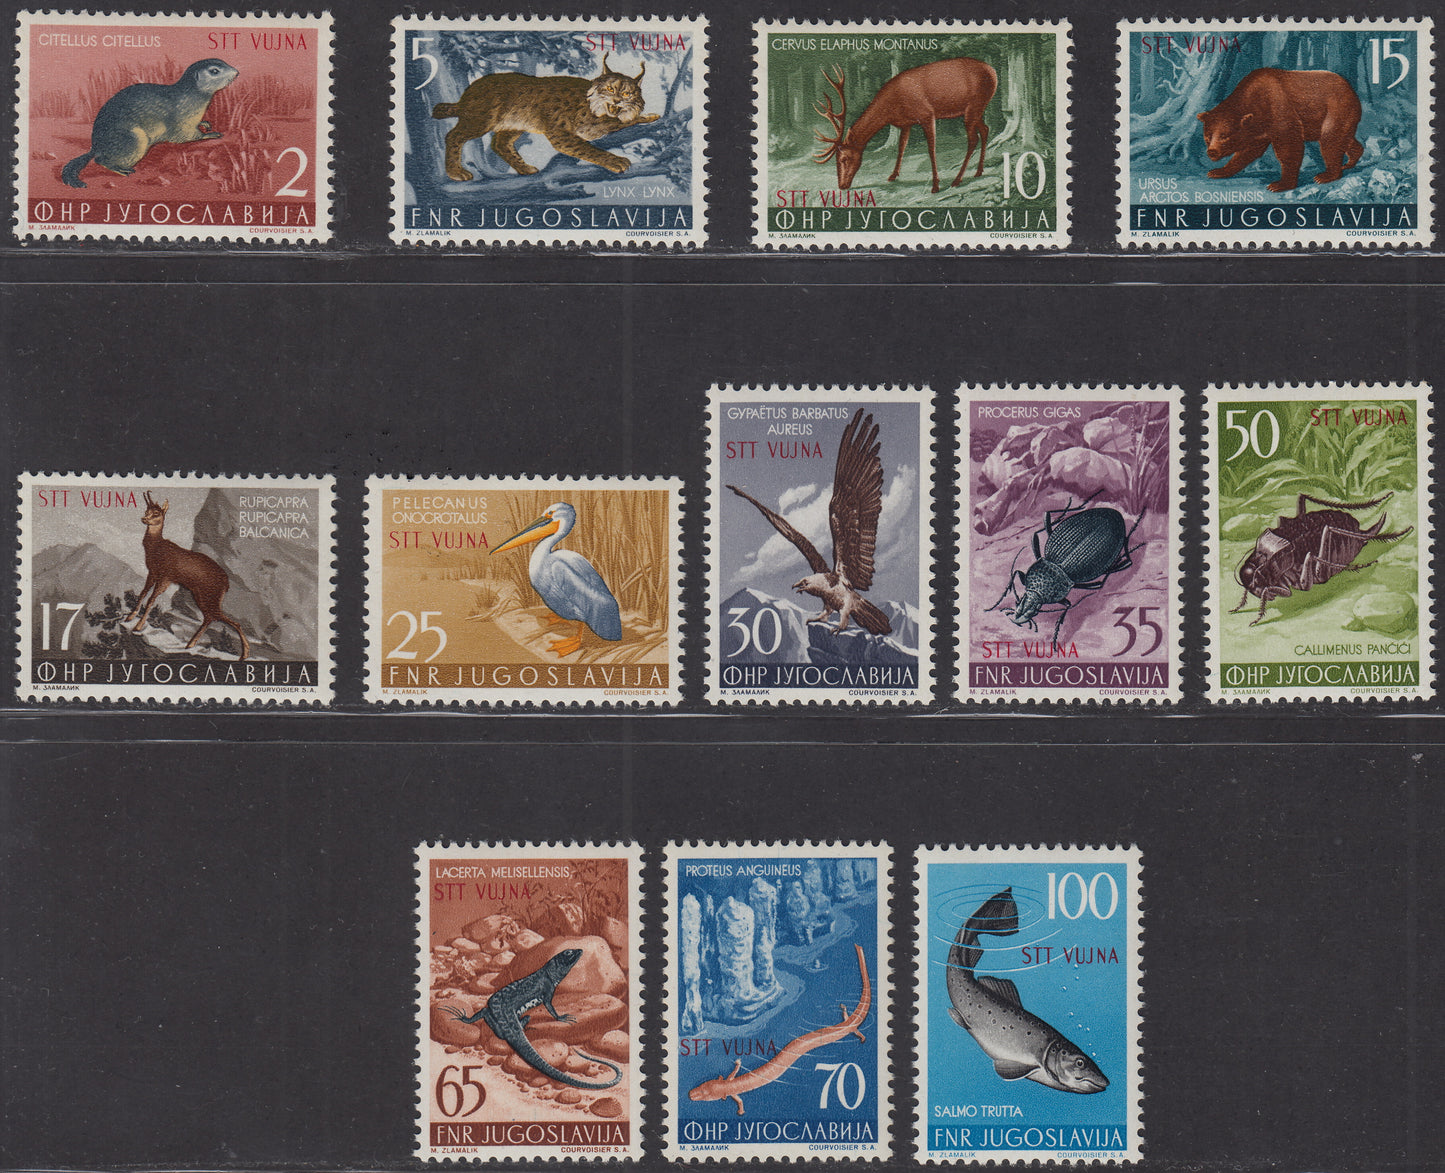 1954 - Animales, sellos de Yugoslavia con colores cambiados, juego completo de 12 sellos nuevos intactos (101/112) 